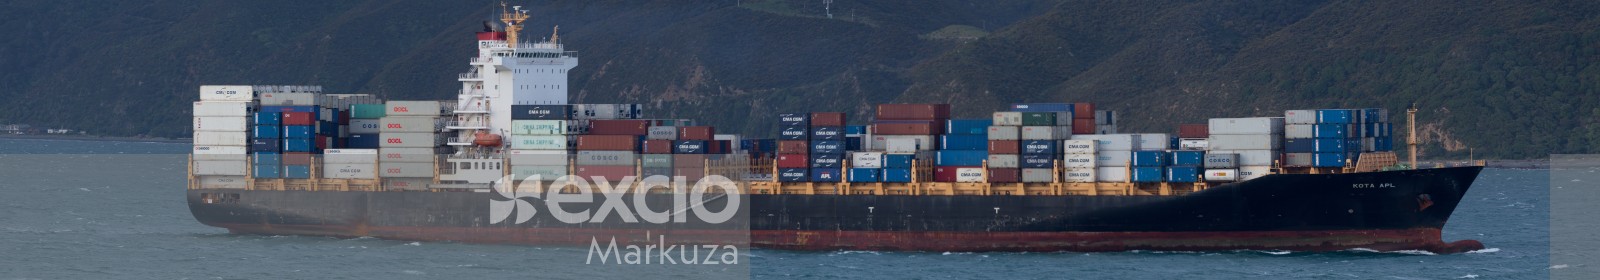 Long shipping container cargo ship panorama